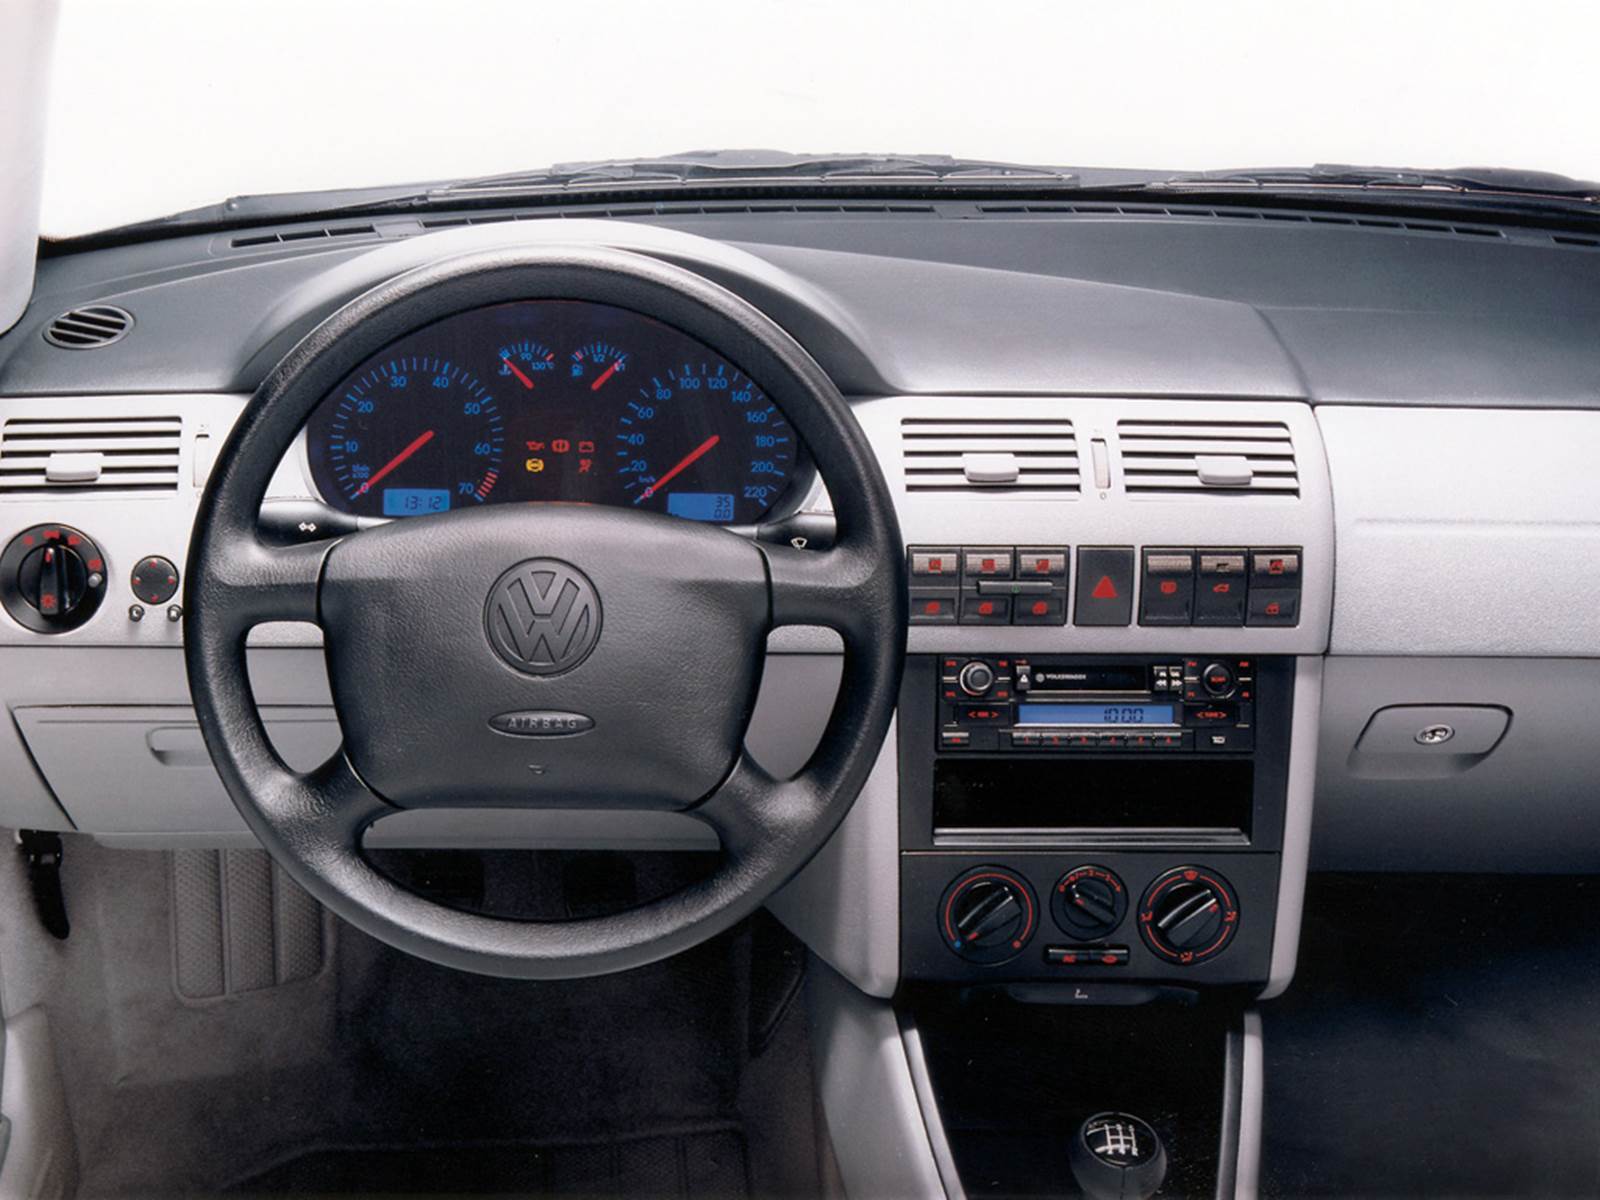 VW Parati Crossover 2002 e 2004